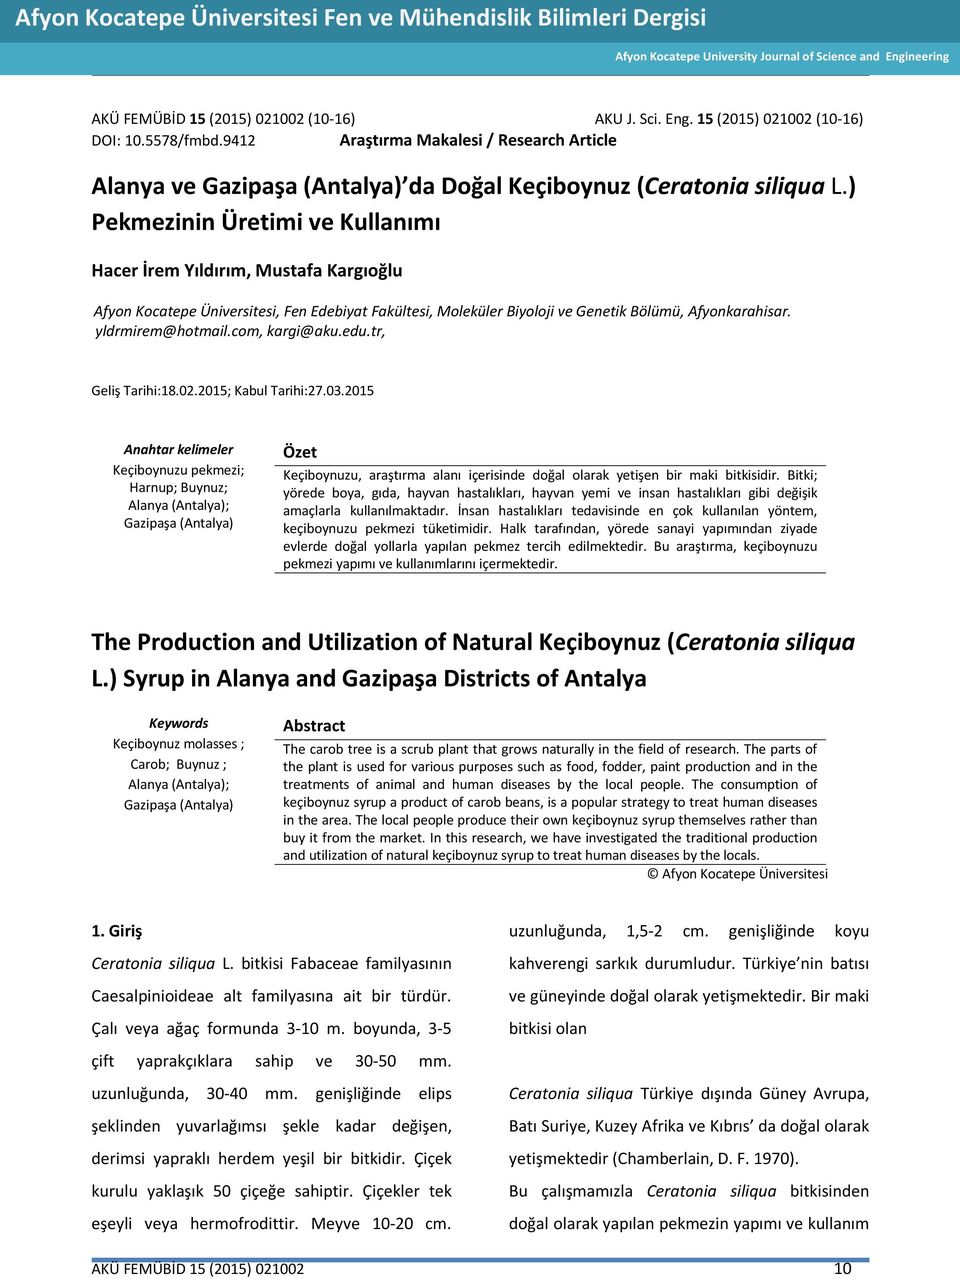 9412 Araştırma Makalesi / Research Article Alanya ve Gazipaşa (Antalya) da Doğal Keçiboynuz (Ceratonia siliqua L.